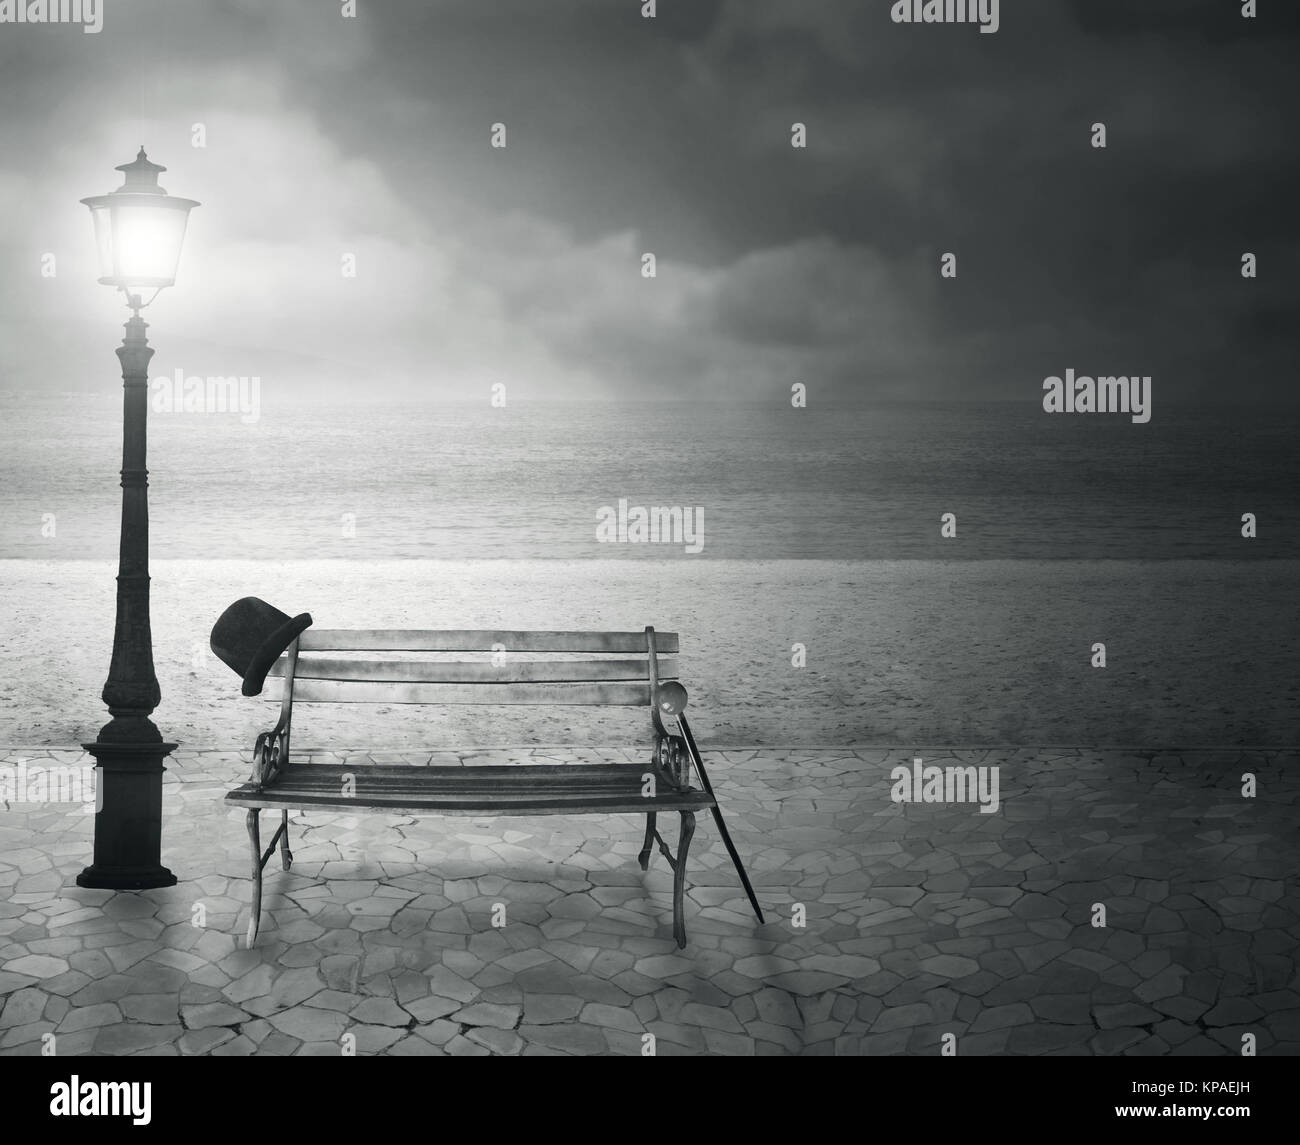 Schöne vintage künstlerische am Meer in der Nacht vorstellen, in Schwarz und Weiß Stockfoto